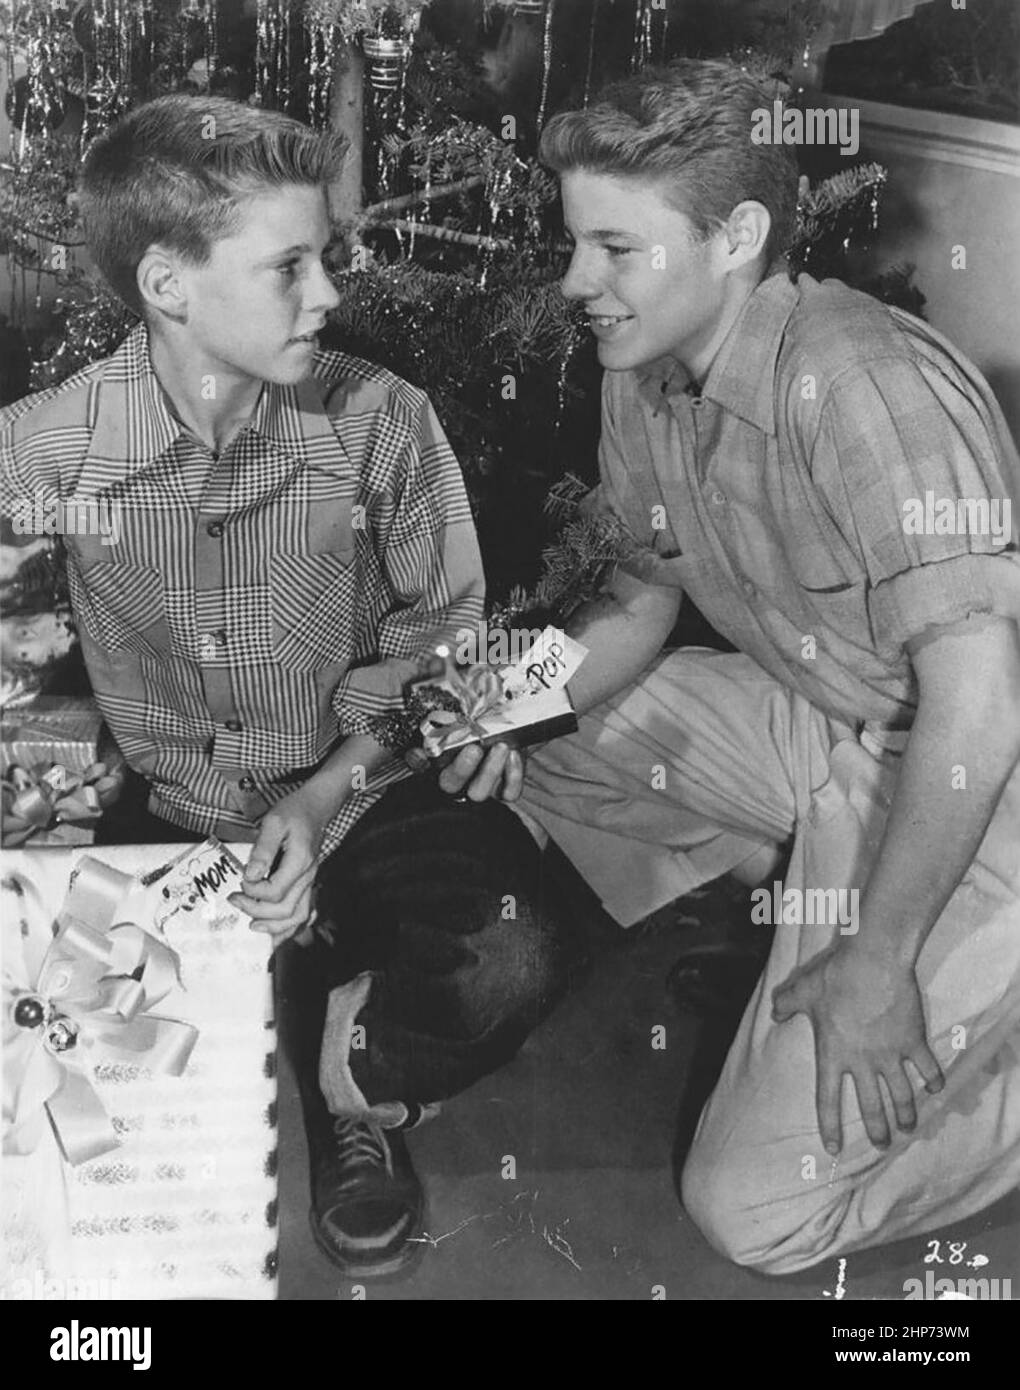 Photo publicitaire des enfants américains acteurs, (de gauche à droite) Ricky Nelson et David Nelson faisant la promotion de leurs rôles dans la série télévisée ABC les aventures d'Ozzie et Harriet, vers 1952 Banque D'Images